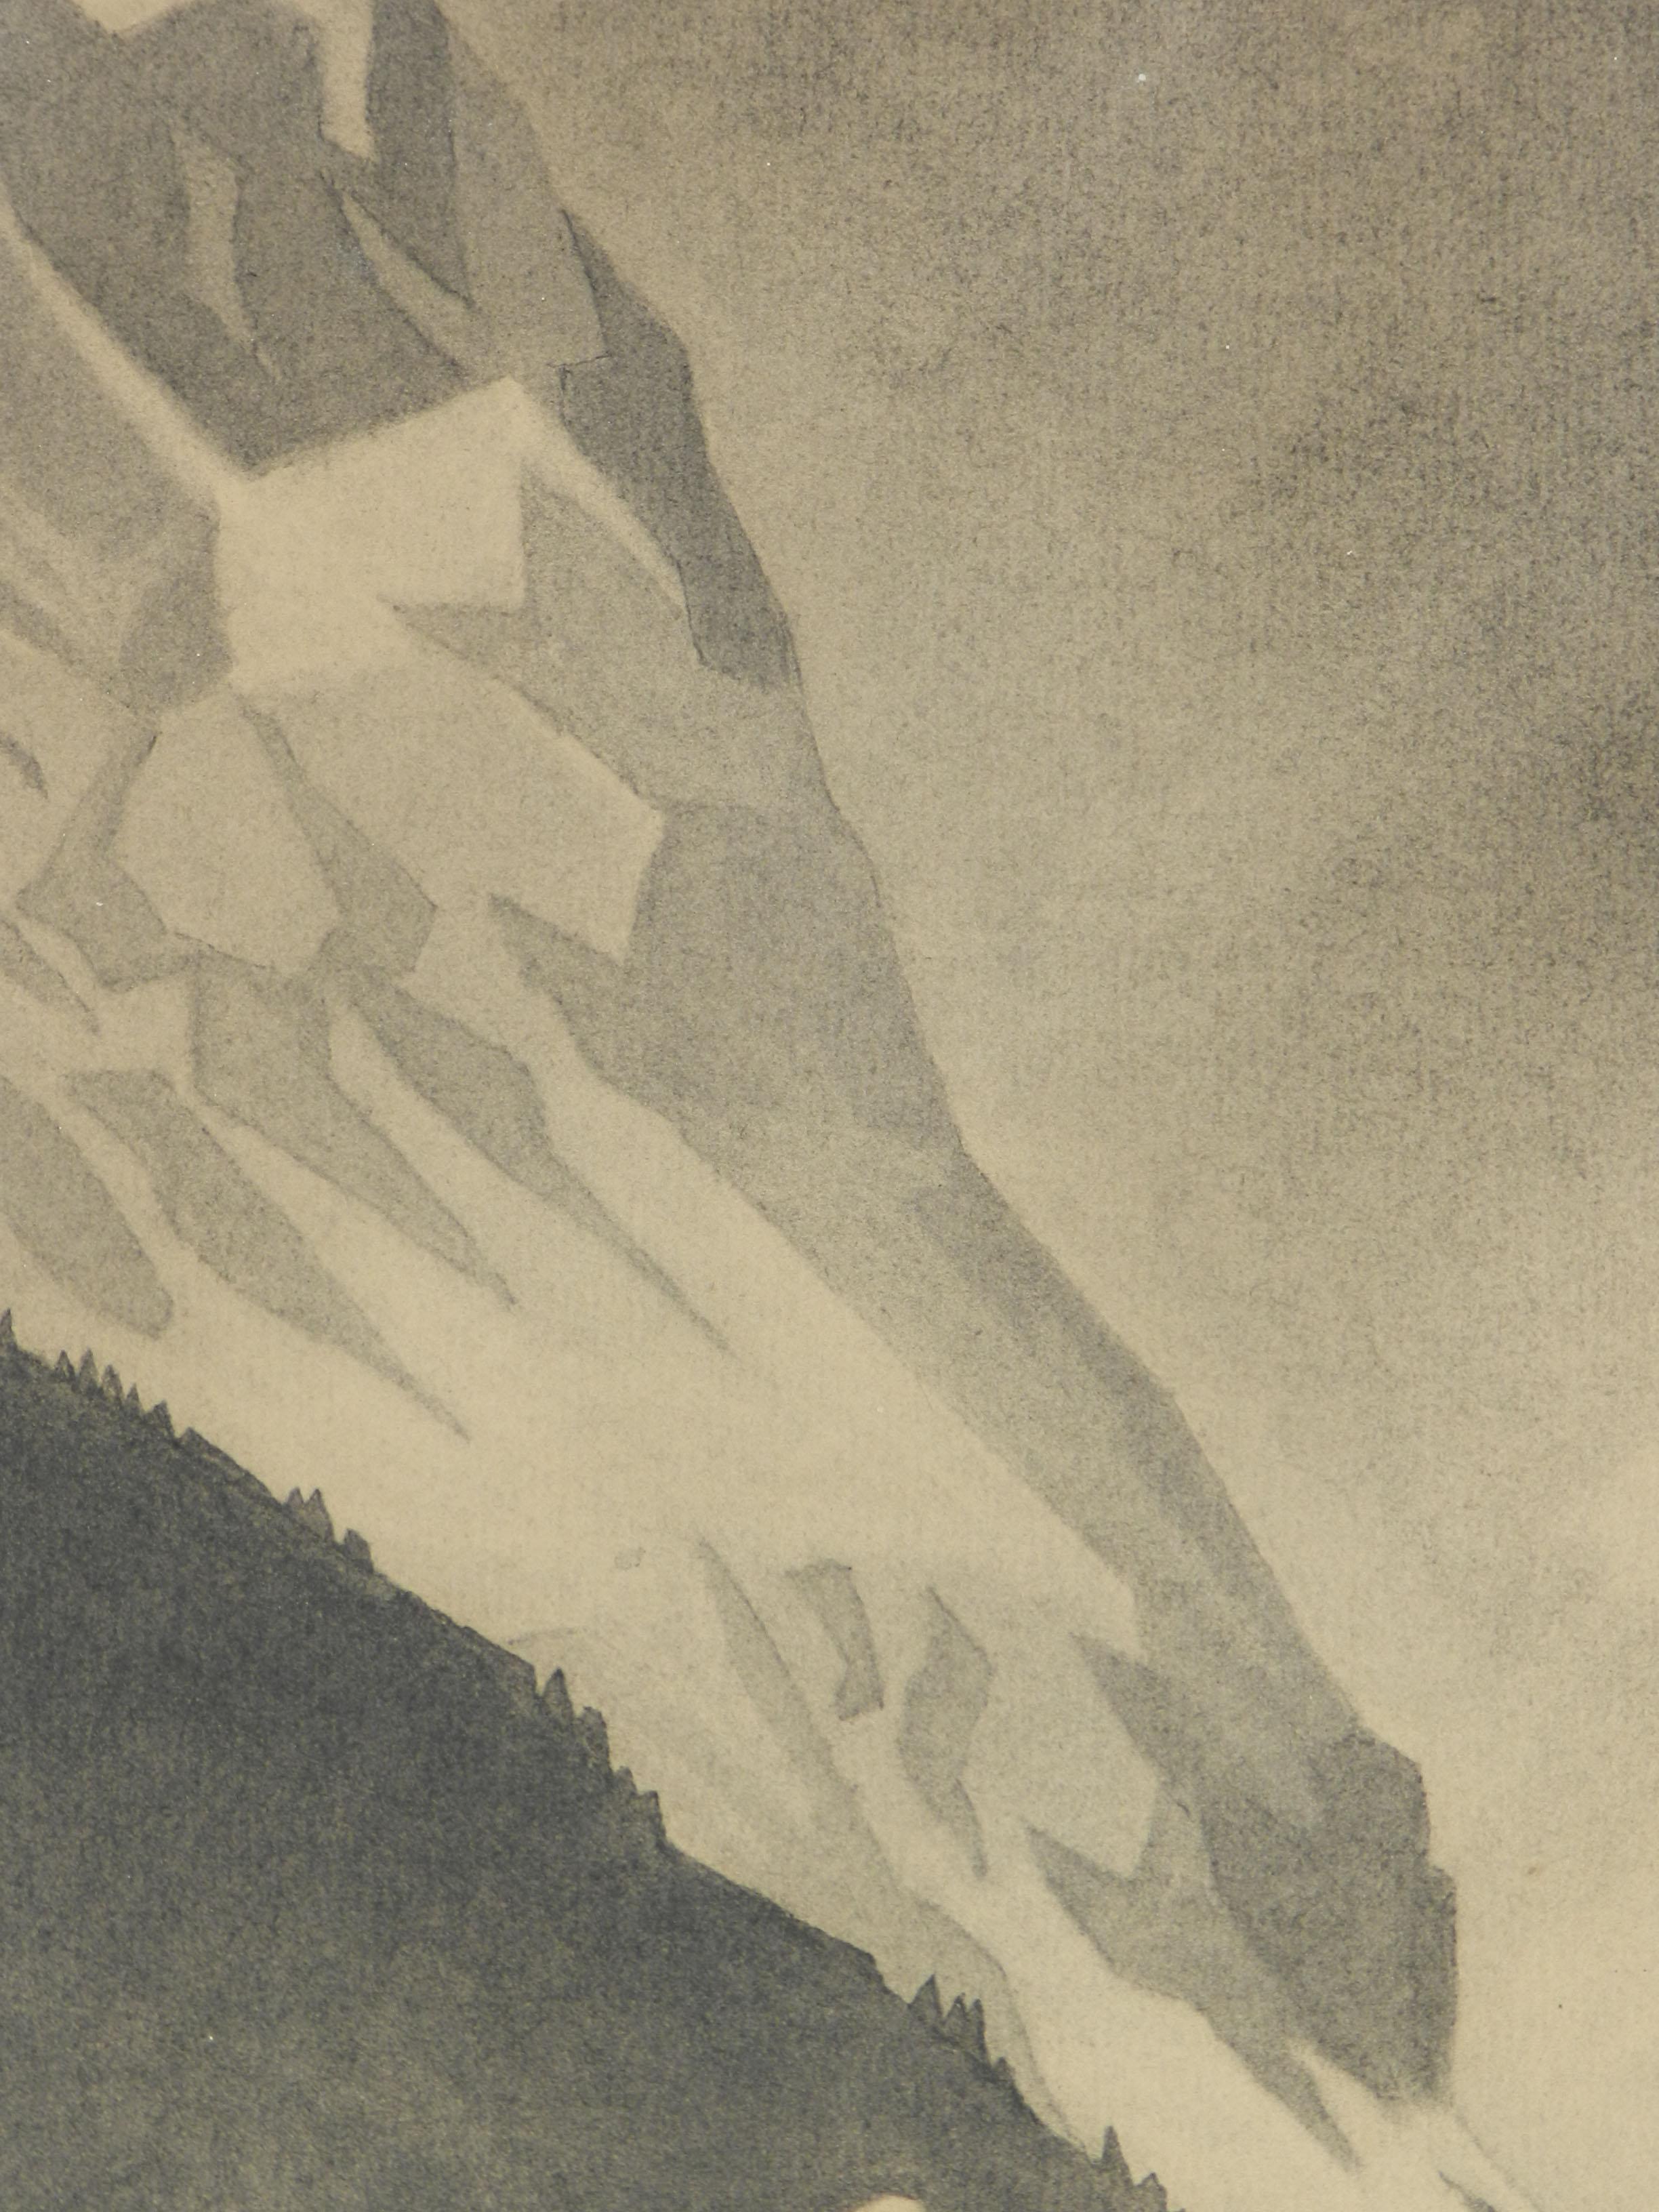 Art Deco Mountain Snow Scene Signed Gisele Berne de Geavisie c1933 6